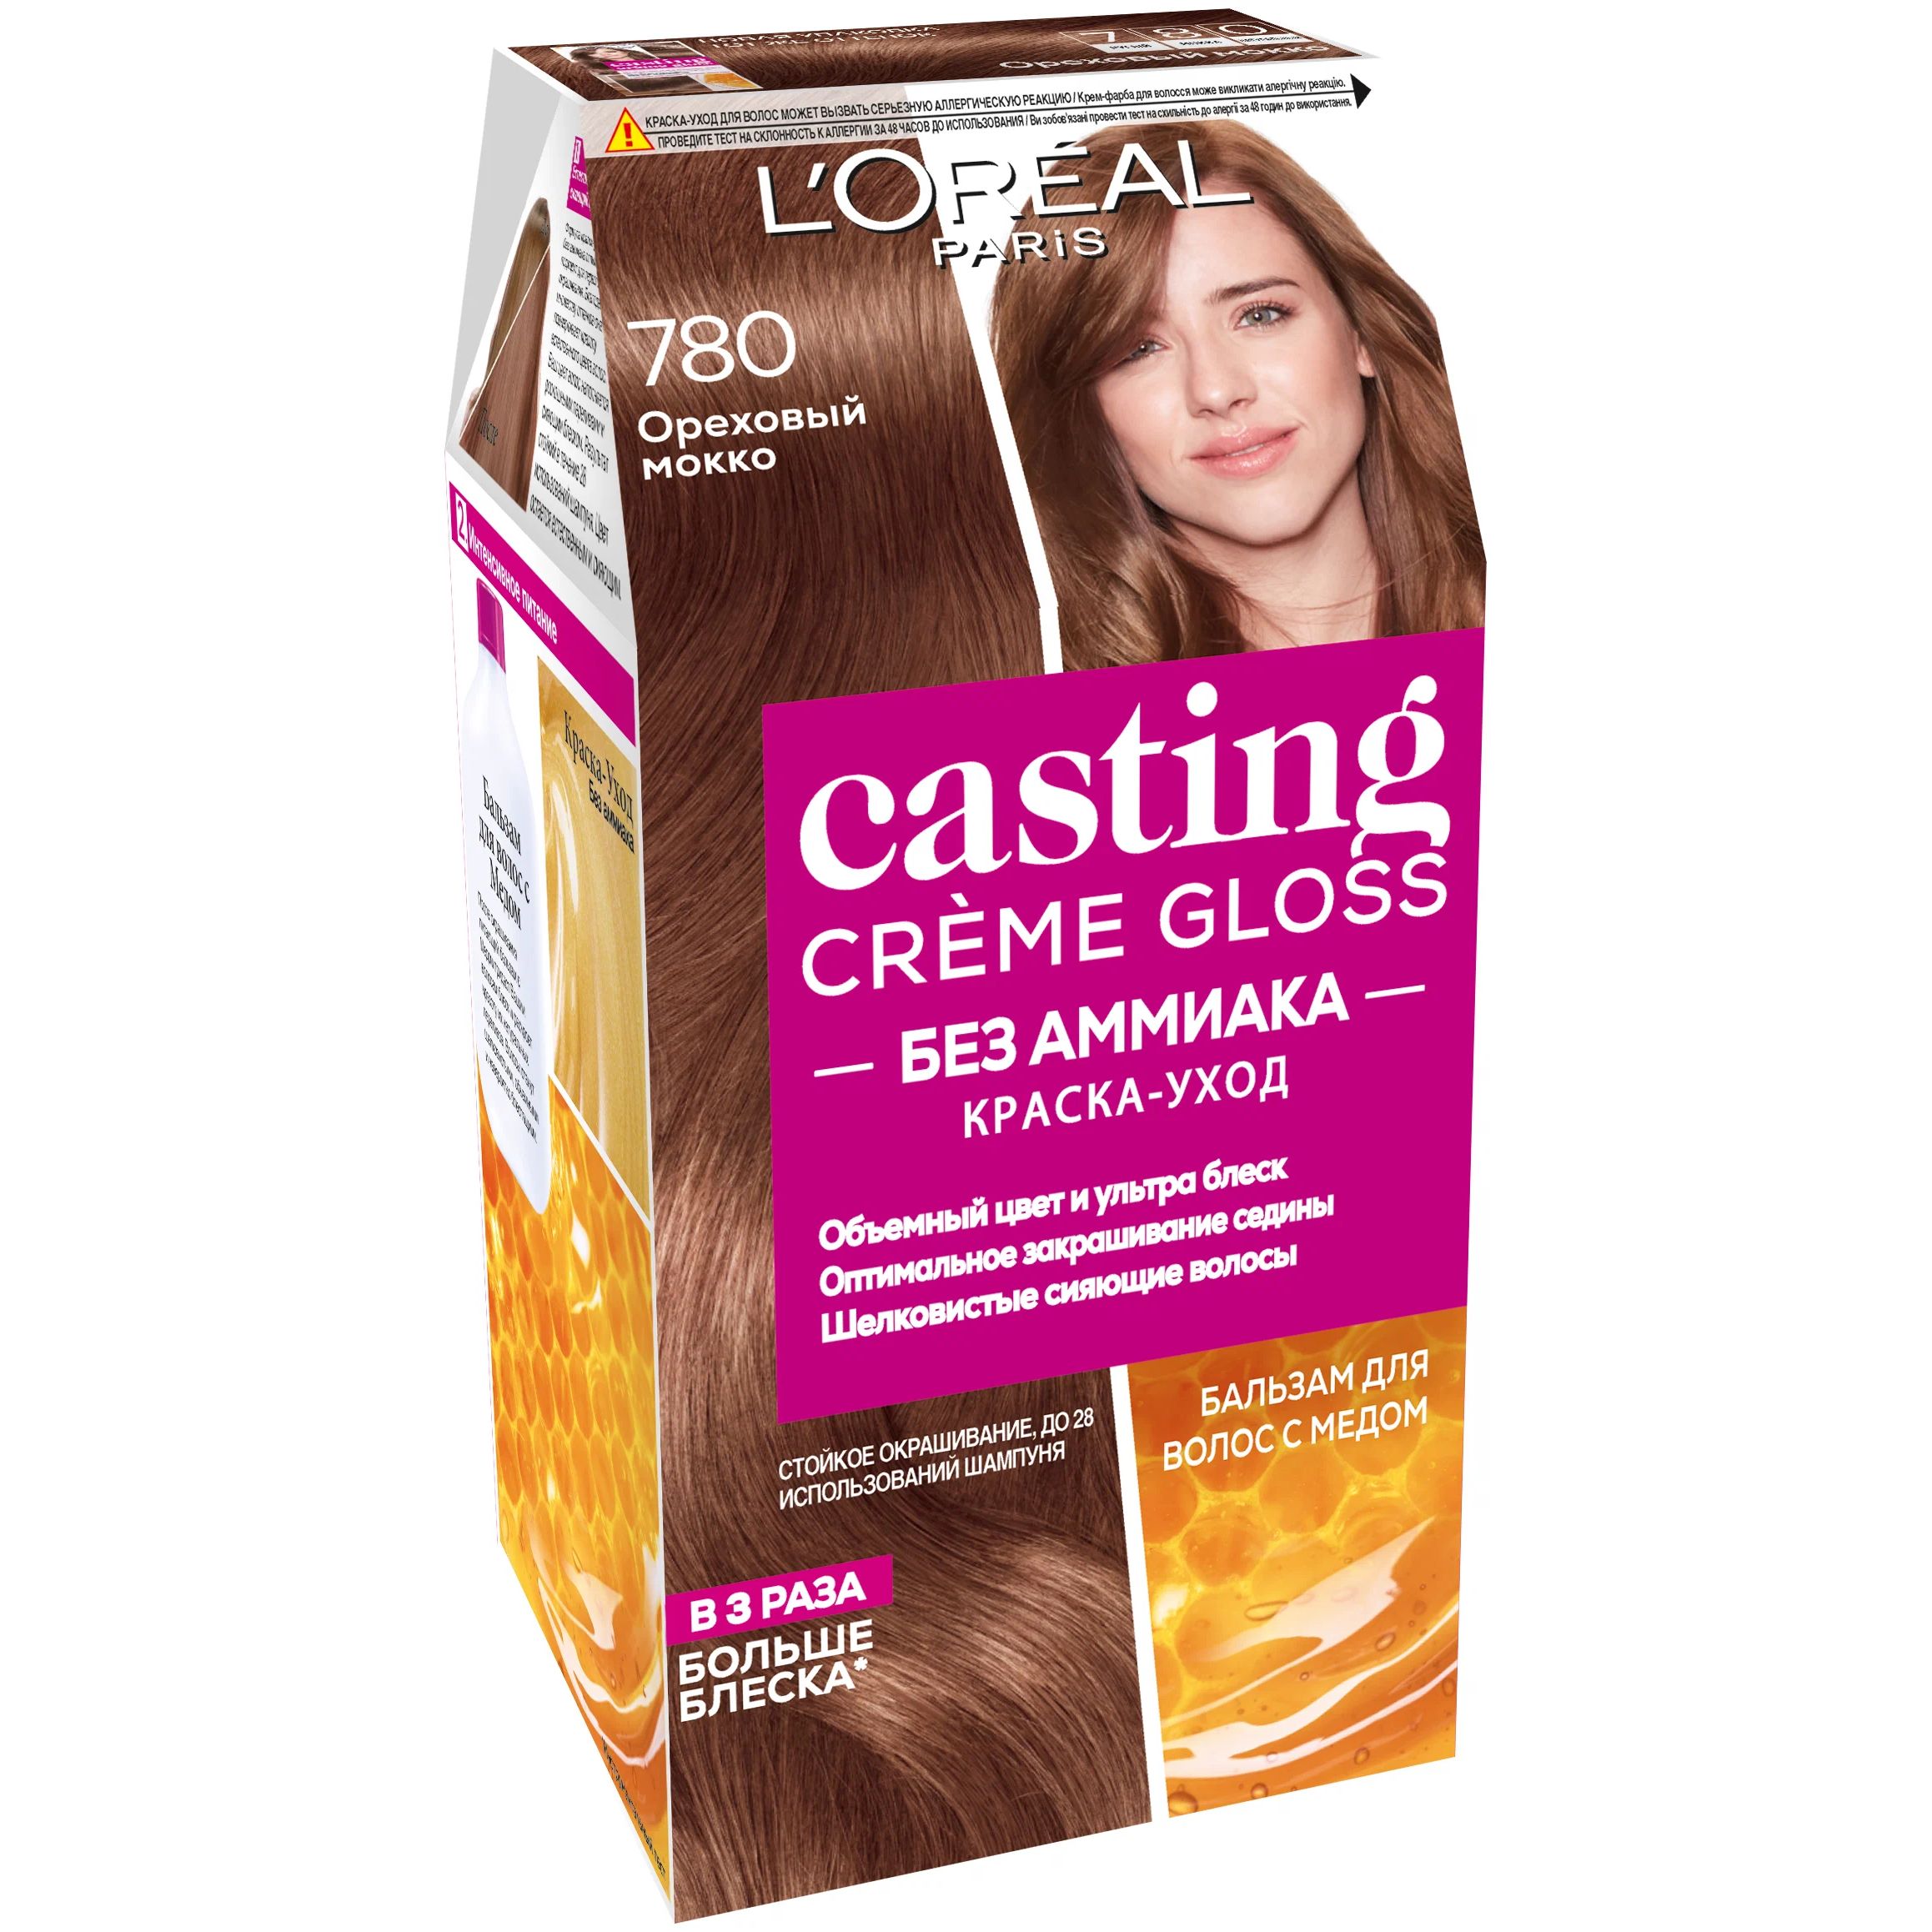 Краска-уход для волос L'Oreal Paris Casting Creme Gloss ореховый мокко, №780, 183 мл стойкая крем краска для волос del colore 5 88 светло коричневый мокко 100 мл